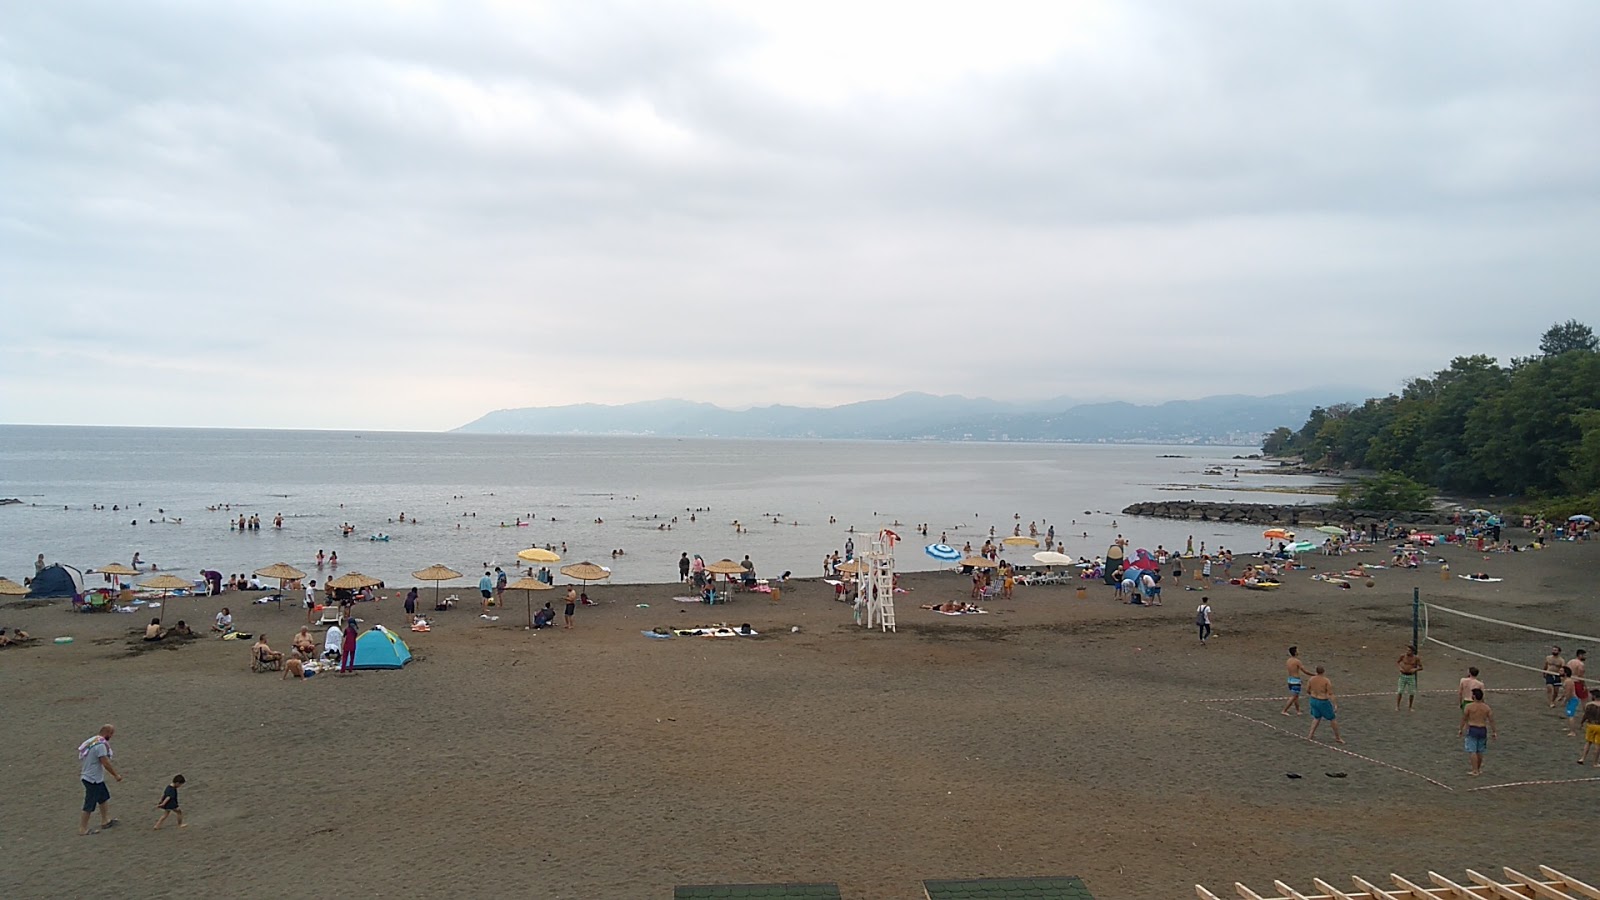 Besikduzu public beach'in fotoğrafı çok temiz temizlik seviyesi ile